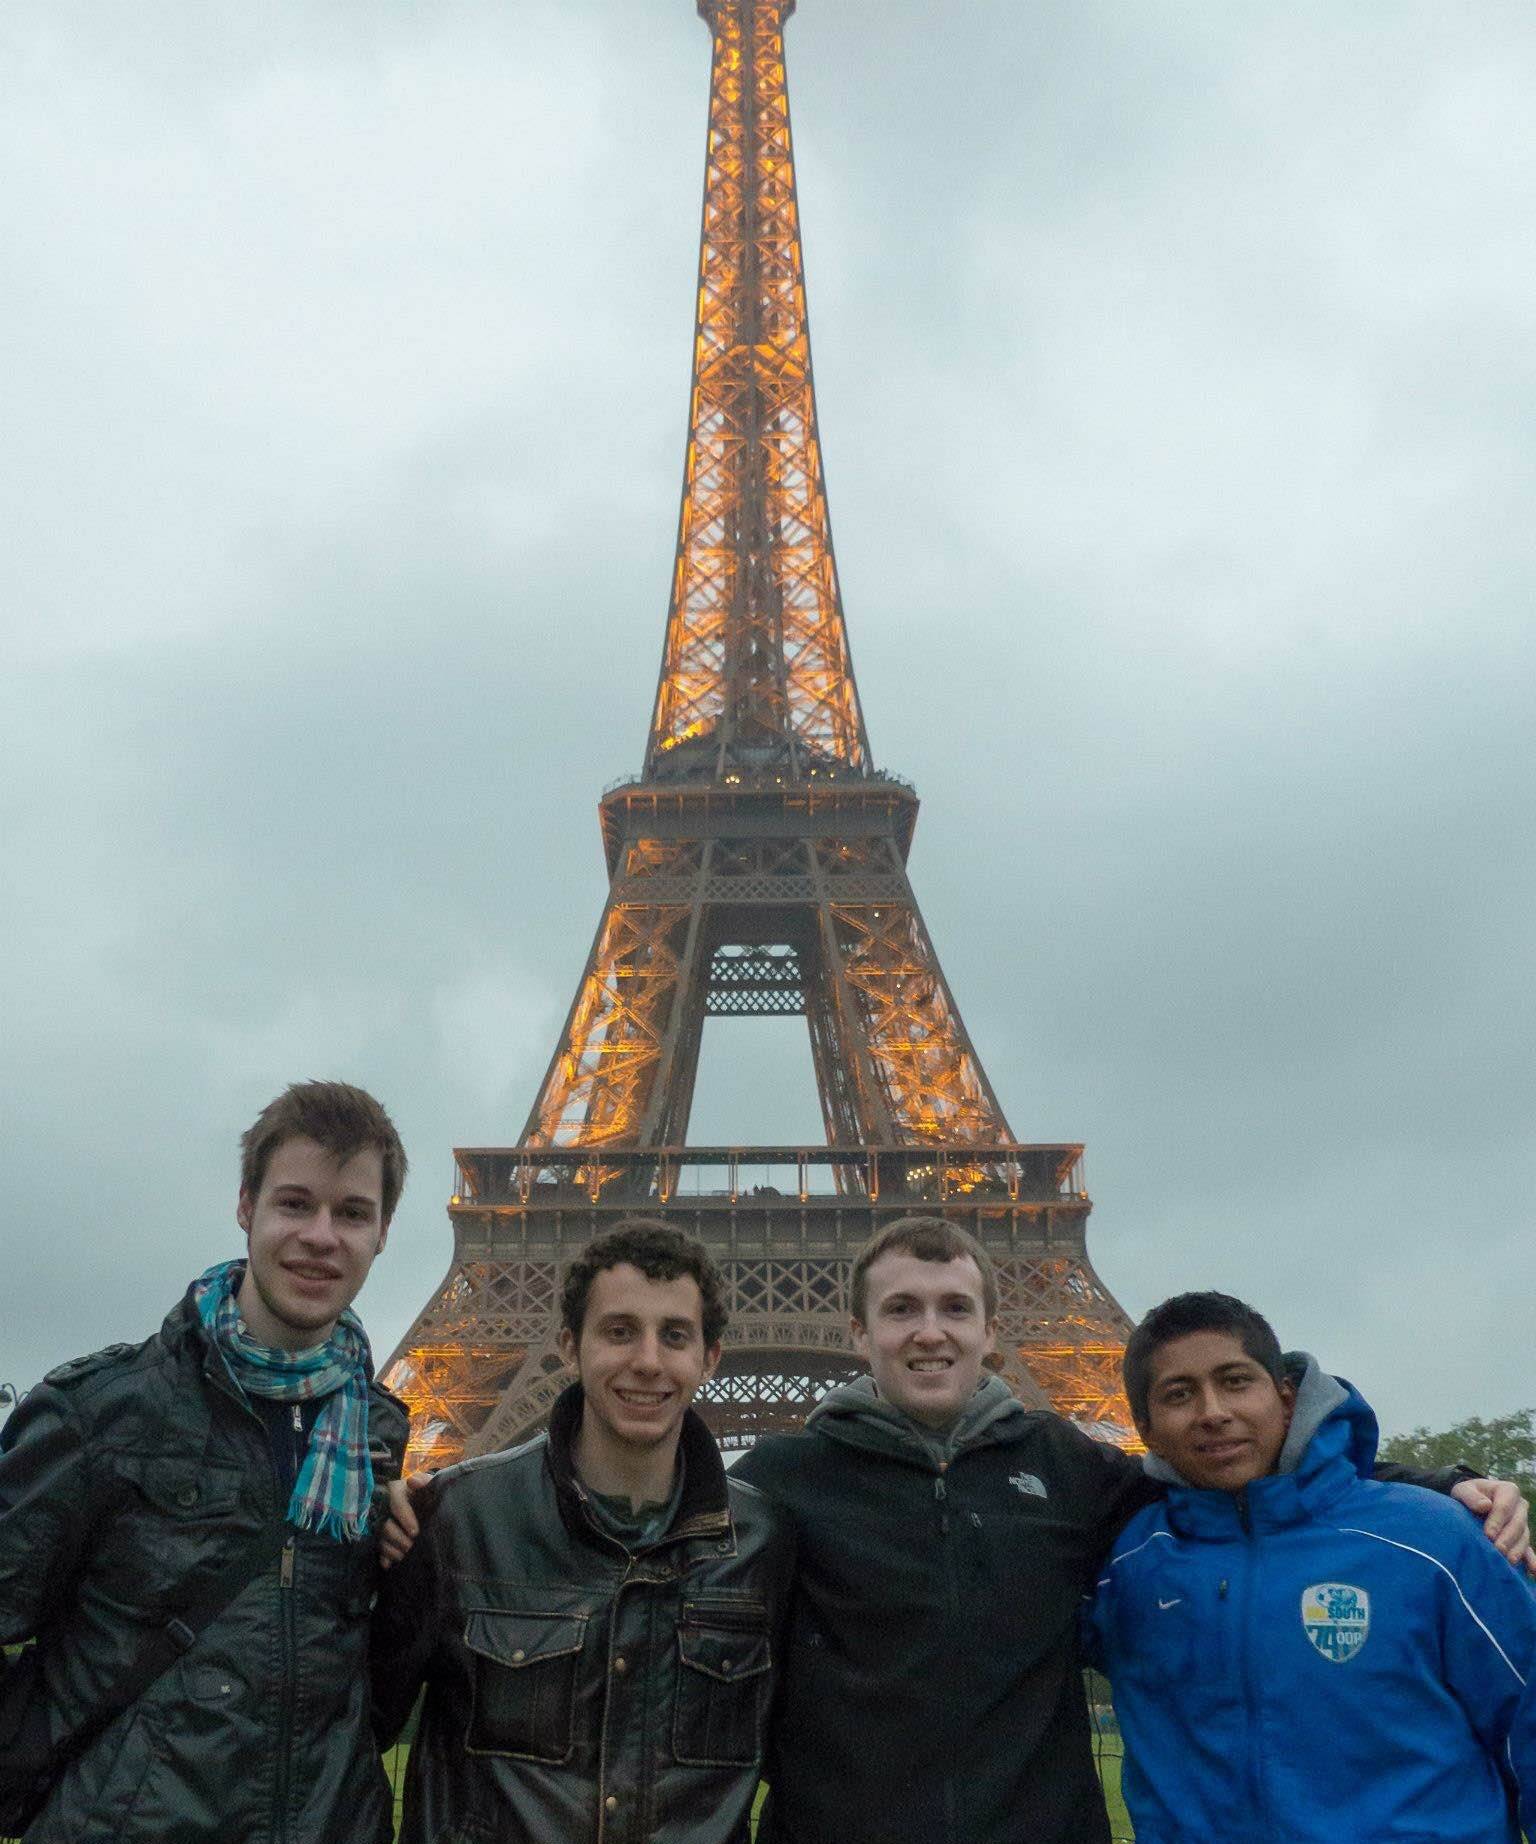 Students in Paris